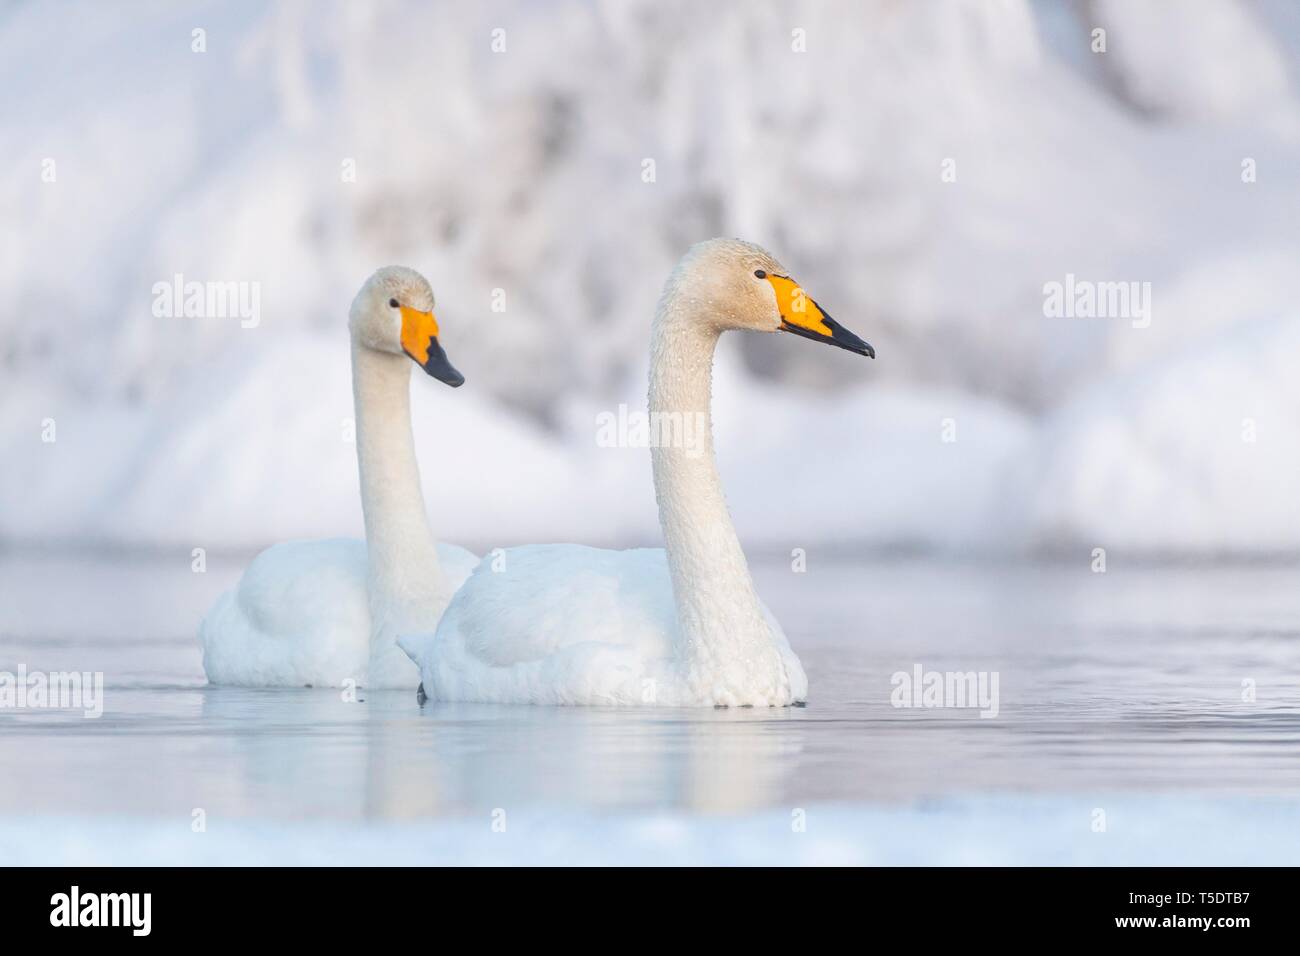 Deux cygnes chanteurs (Cygnus cygnus) baignade dans le lac, rive enneigée, Muonio, Laponie, Finlande Banque D'Images